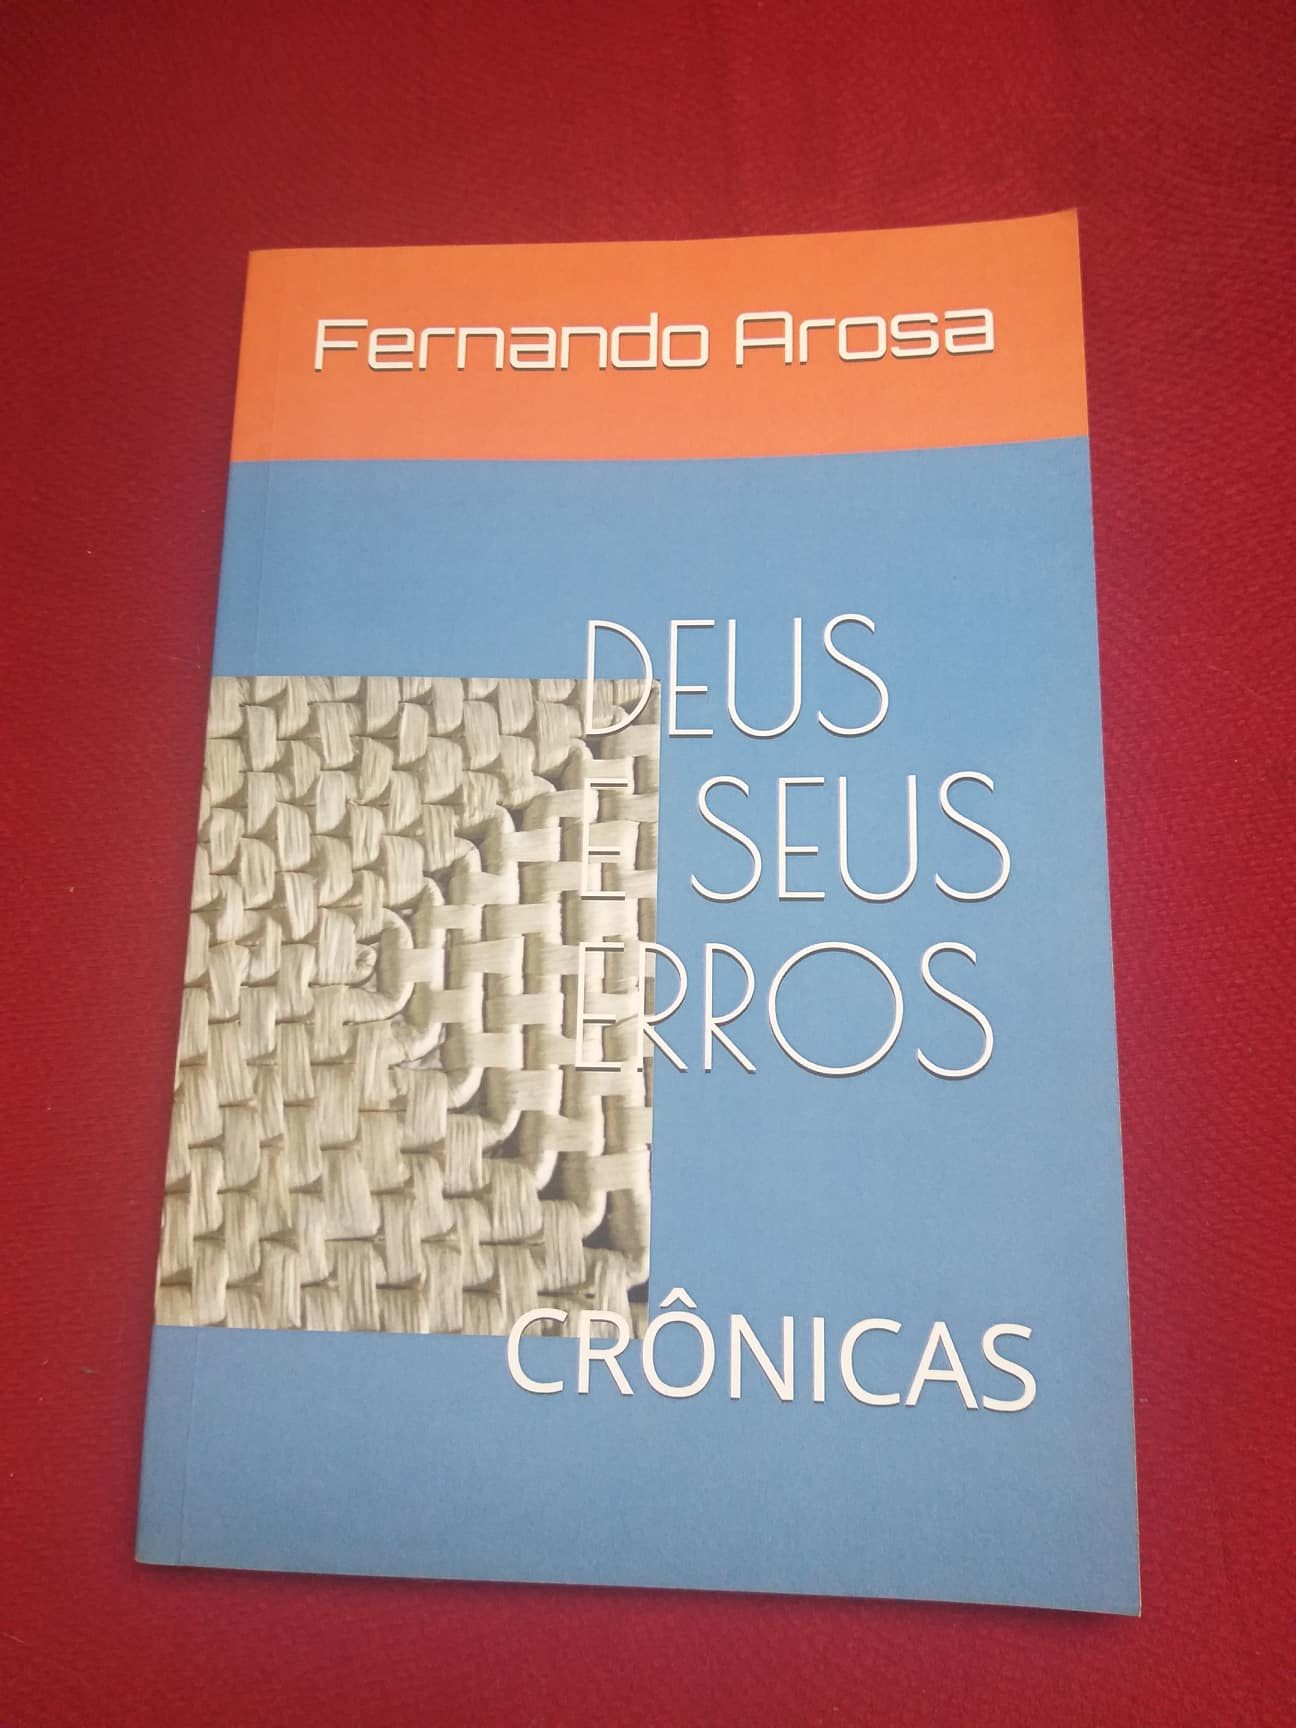 FERNANDO AROSA e1587680155731 - Livro de crônicas 'Deus e seus erros'  é uma ode ao olhar do cotidiano com agudeza e leveza | por Fernando Andrade